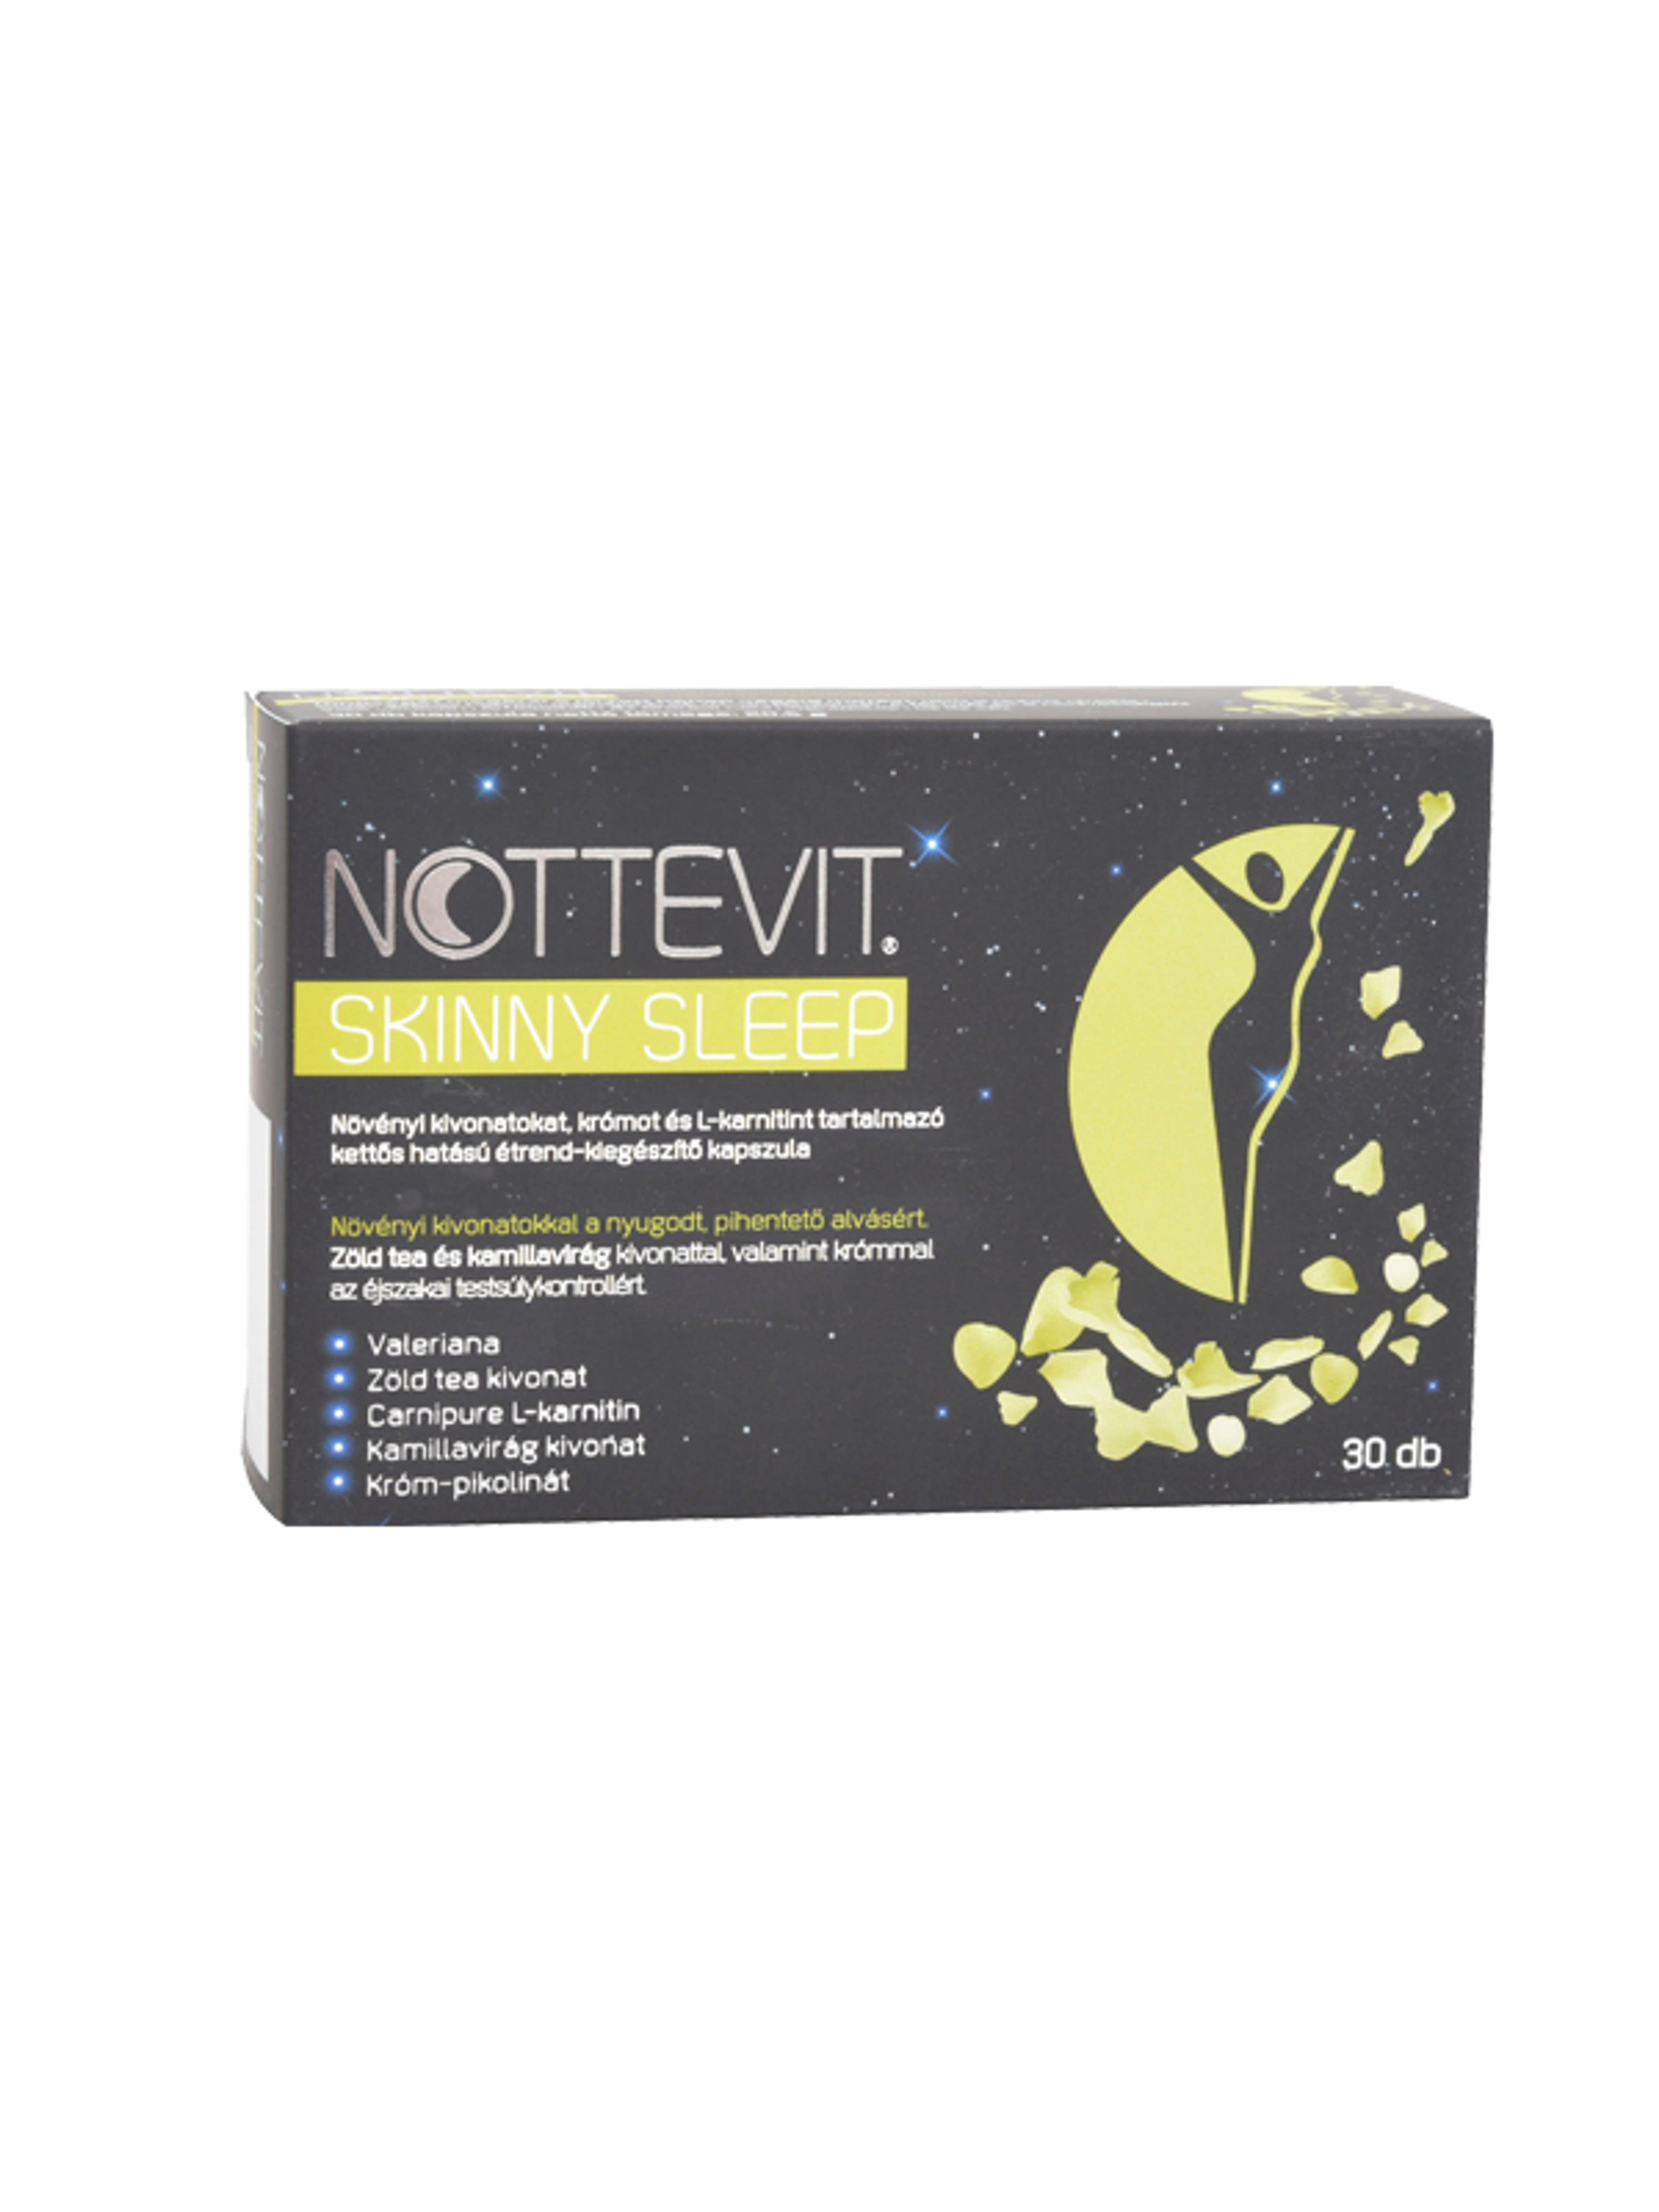 Nottevit skinny sleep étrendkiegészítő kapszula - 30 db